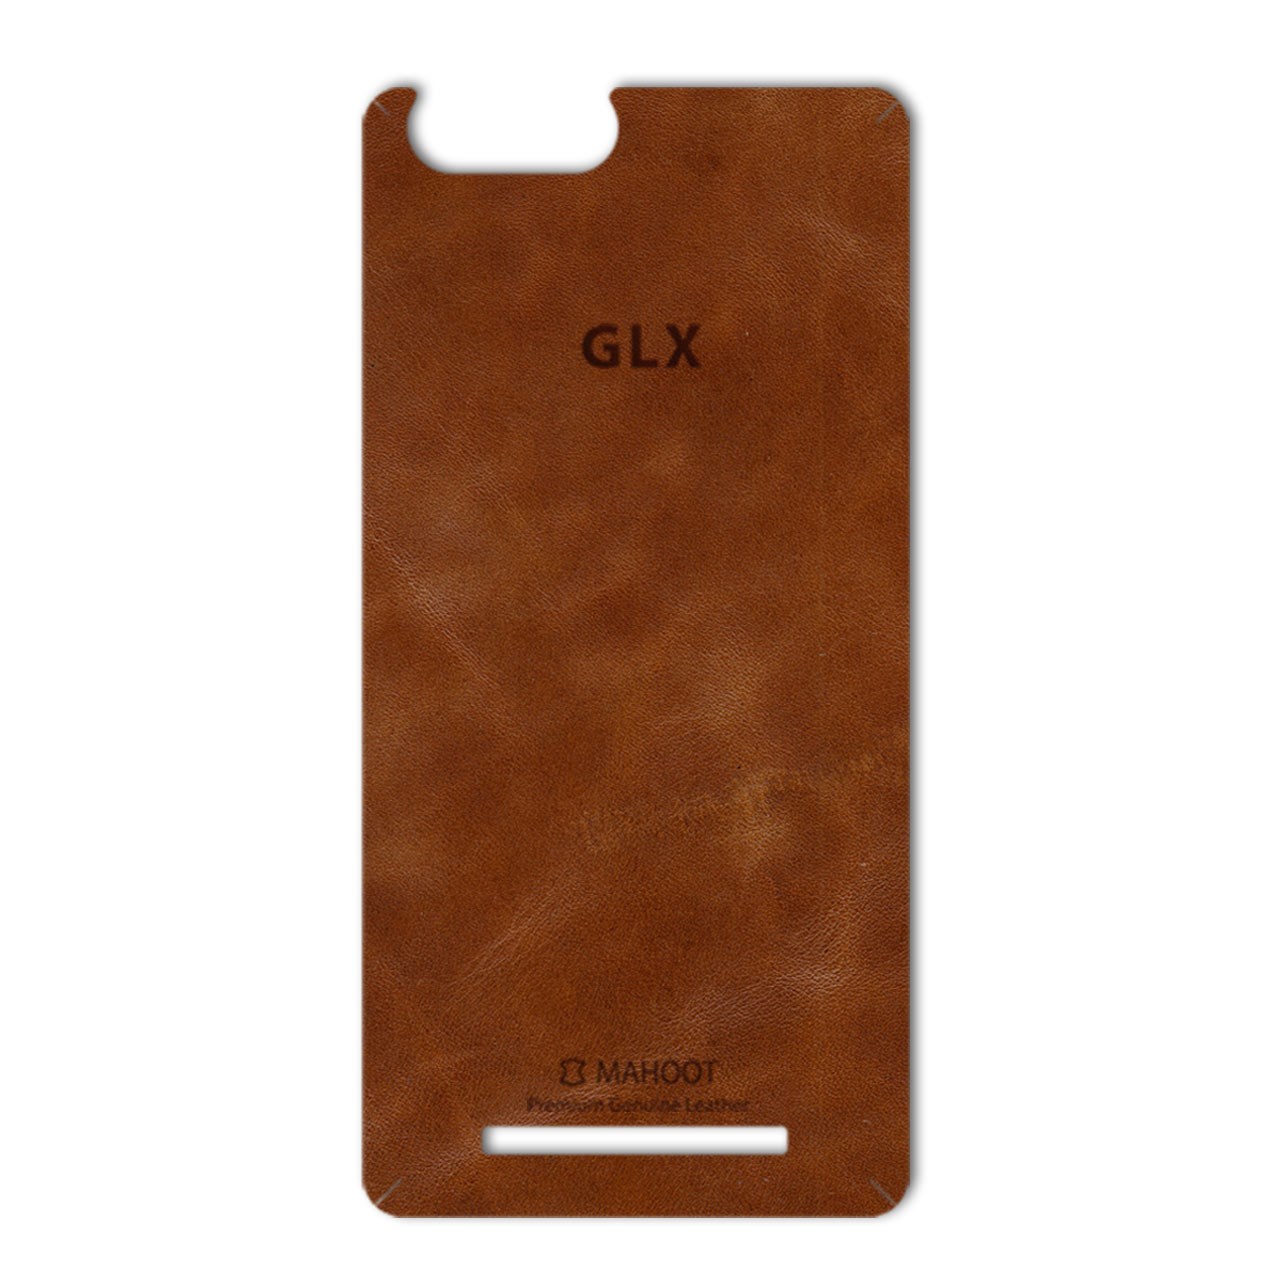 برچسب تزئینی ماهوت مدل Buffalo Leather مناسب برای گوشی GLX Pars